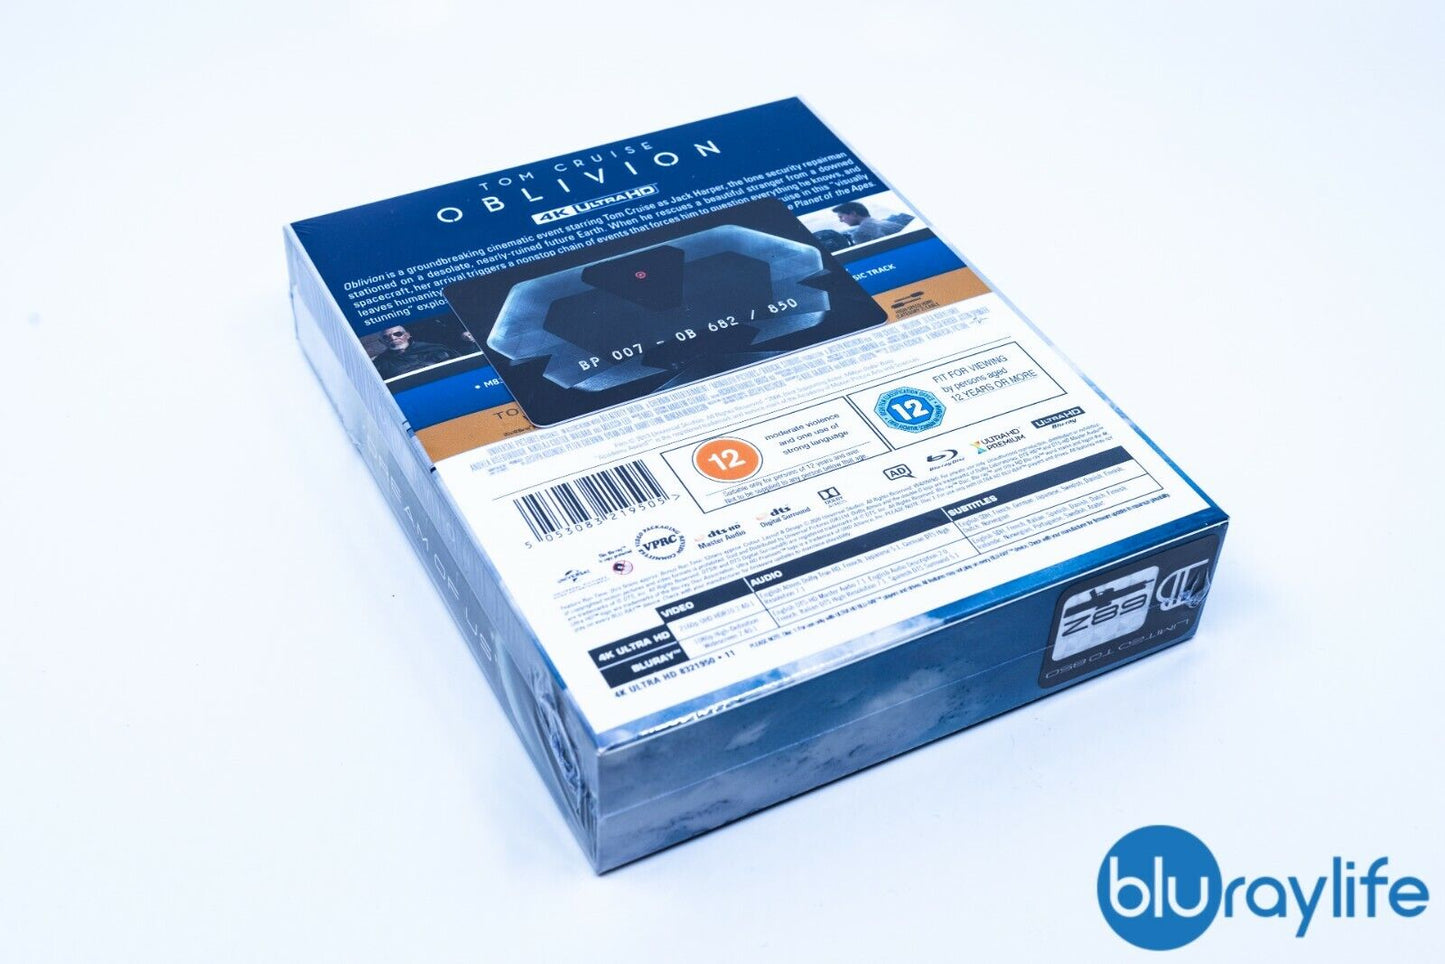 Oblivion 4K Blu-ray Steelbook EverythingBlu BP#007 Exclusive Full Slip